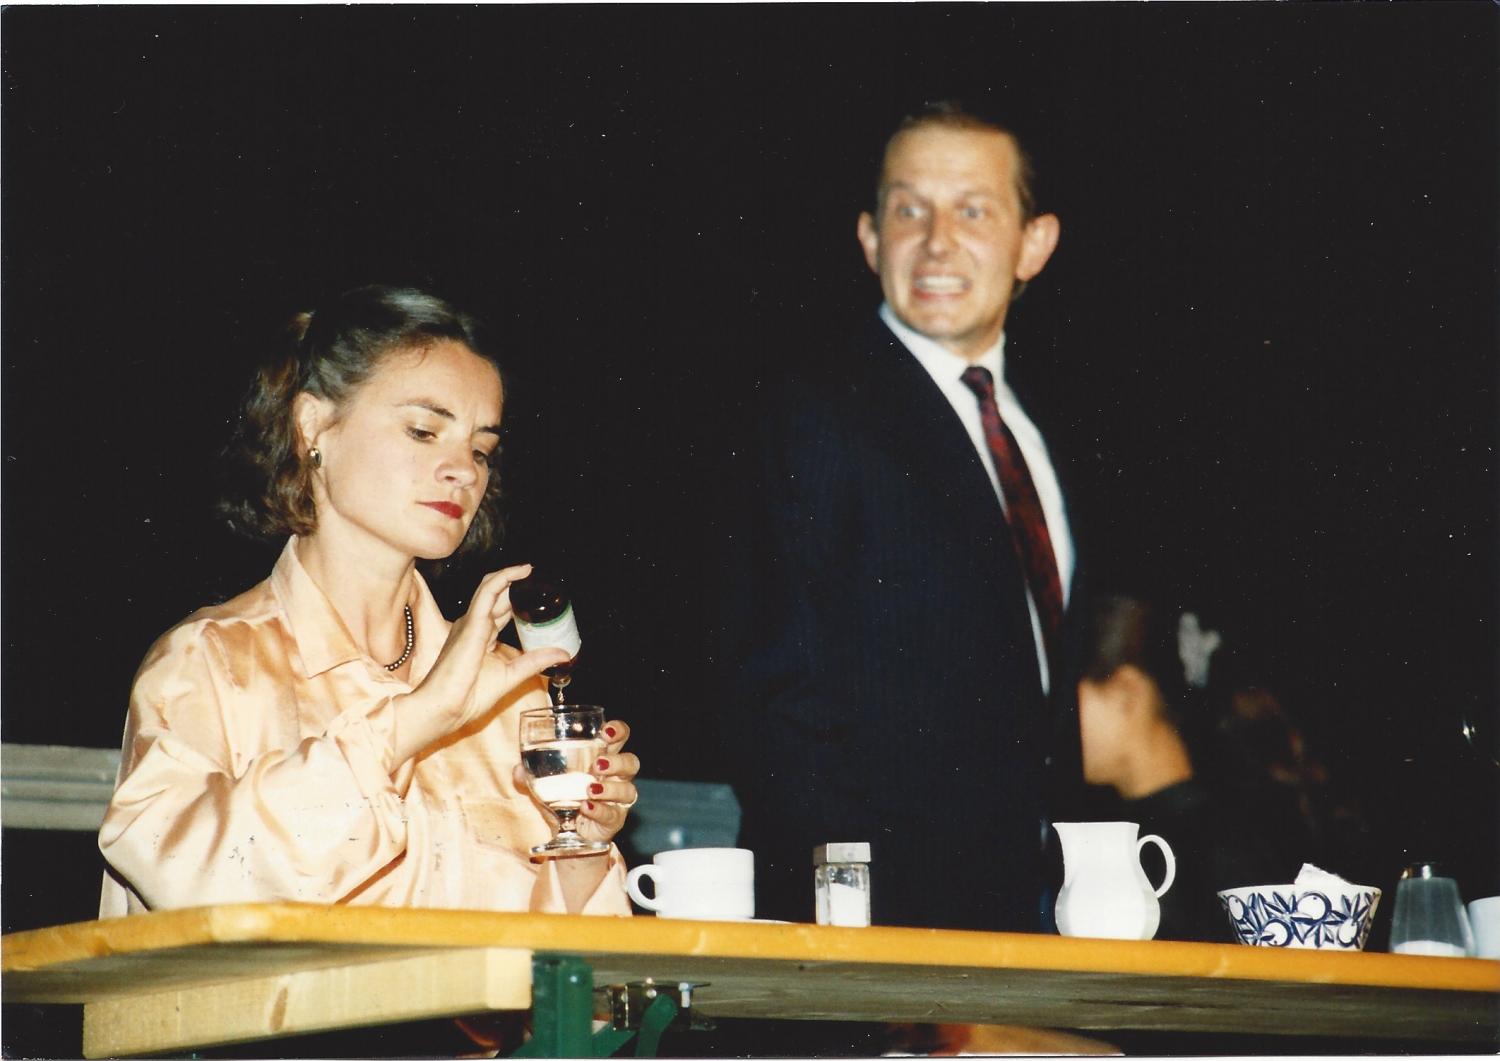 Die erste Inszenierung des See-Burgtheaters in der namengebenden See-Burg im Jahr 1990: "Biedermann und die Brandstifter" von Max Frisch mit Astrid Keller als Frau Biedermann und Hans Ruedi Binswanger als Herr Biedermann.